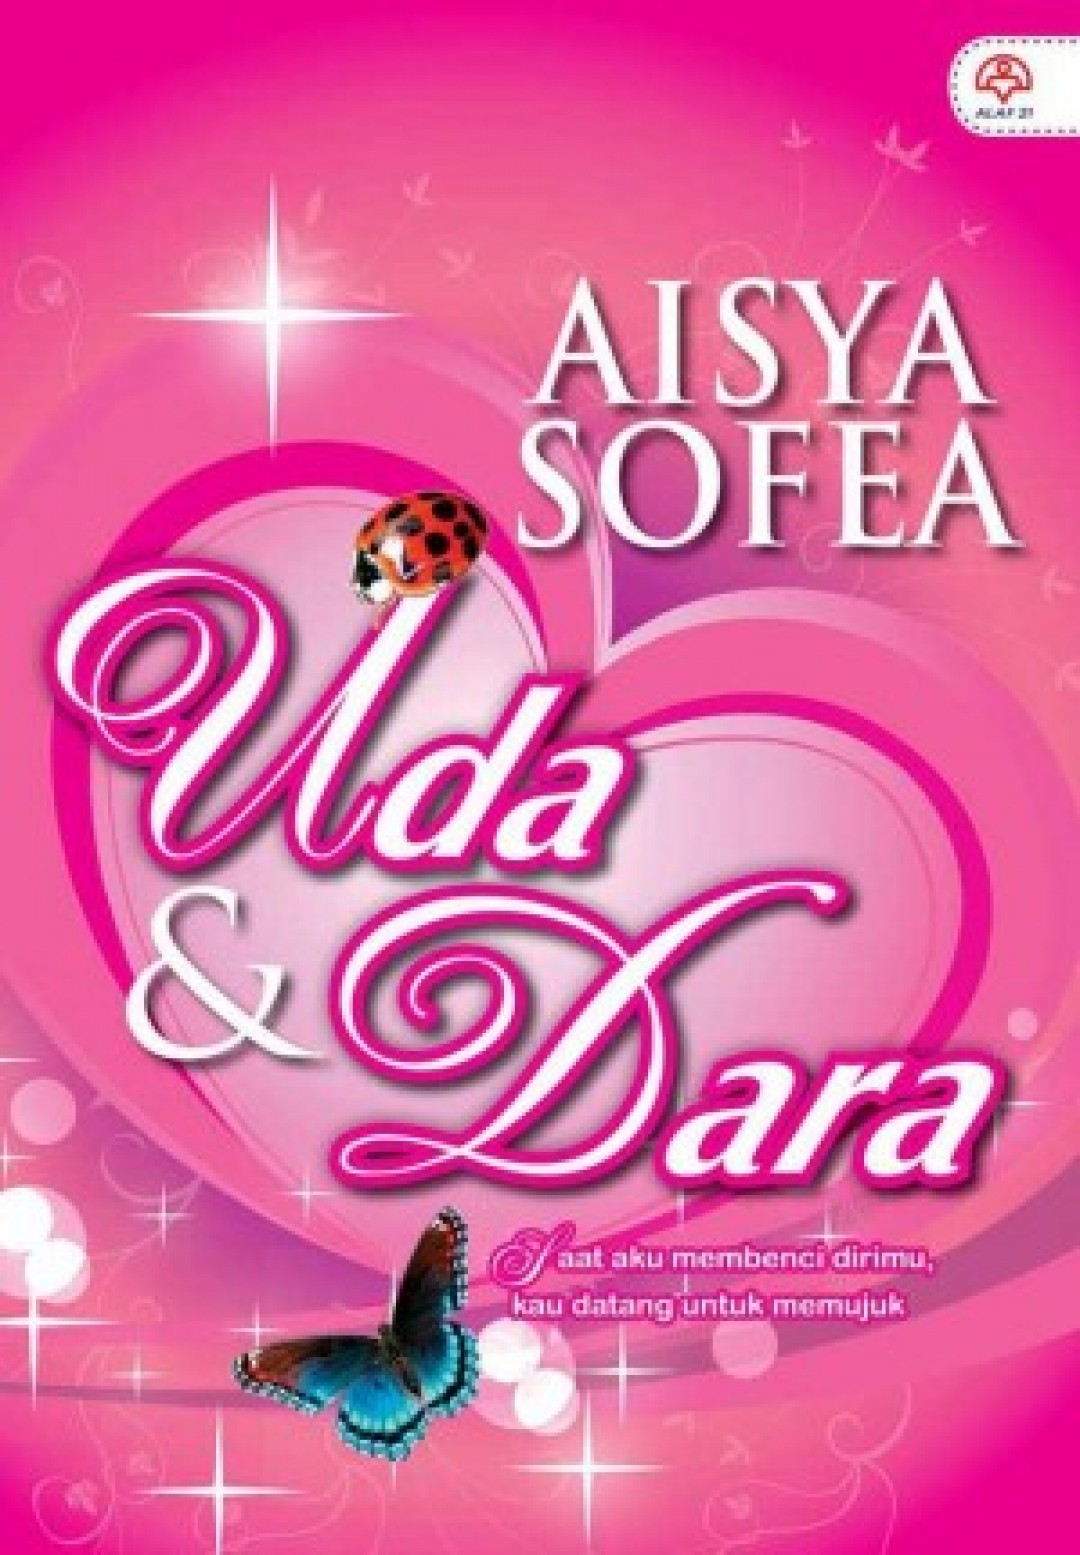 Uda & Dara - Aisya Sofea